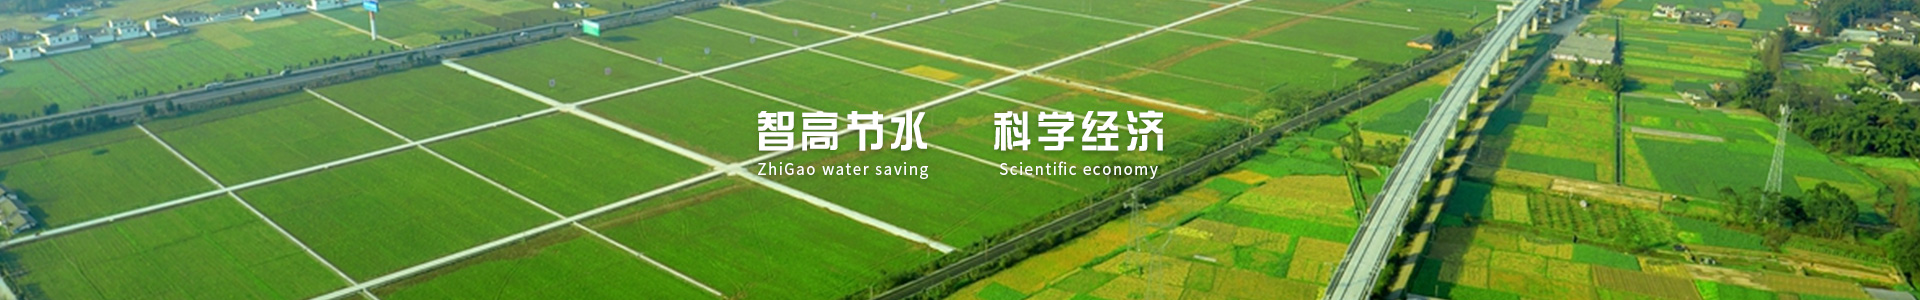 西安节水灌溉